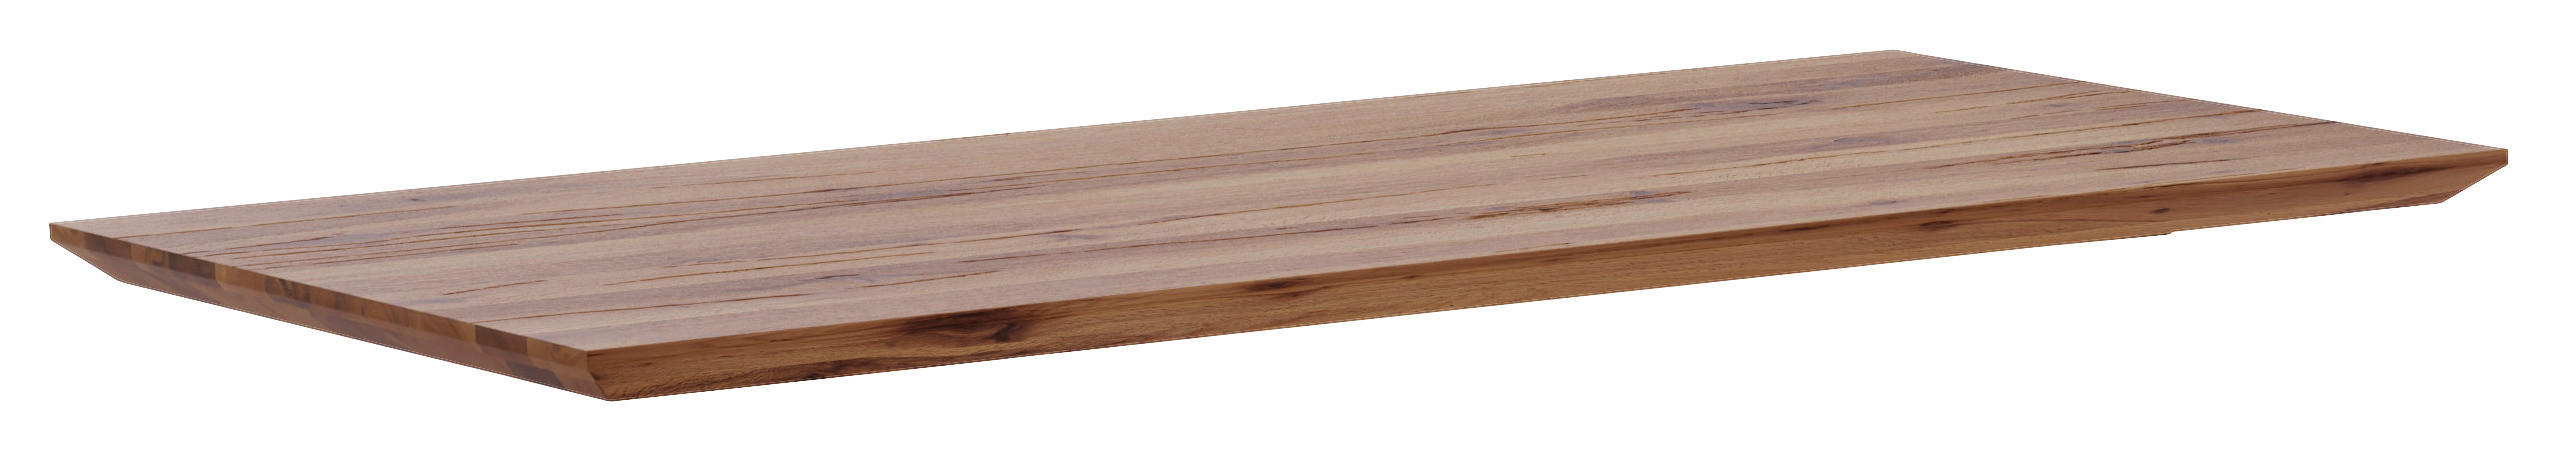 Tischplatte - Schweizer Kante 160/90/6 cm Eiche massiv Holz Braun, Eichefarben  - Eichefarben/Braun, Design, Holz (160/90/6cm) - Waldwelt